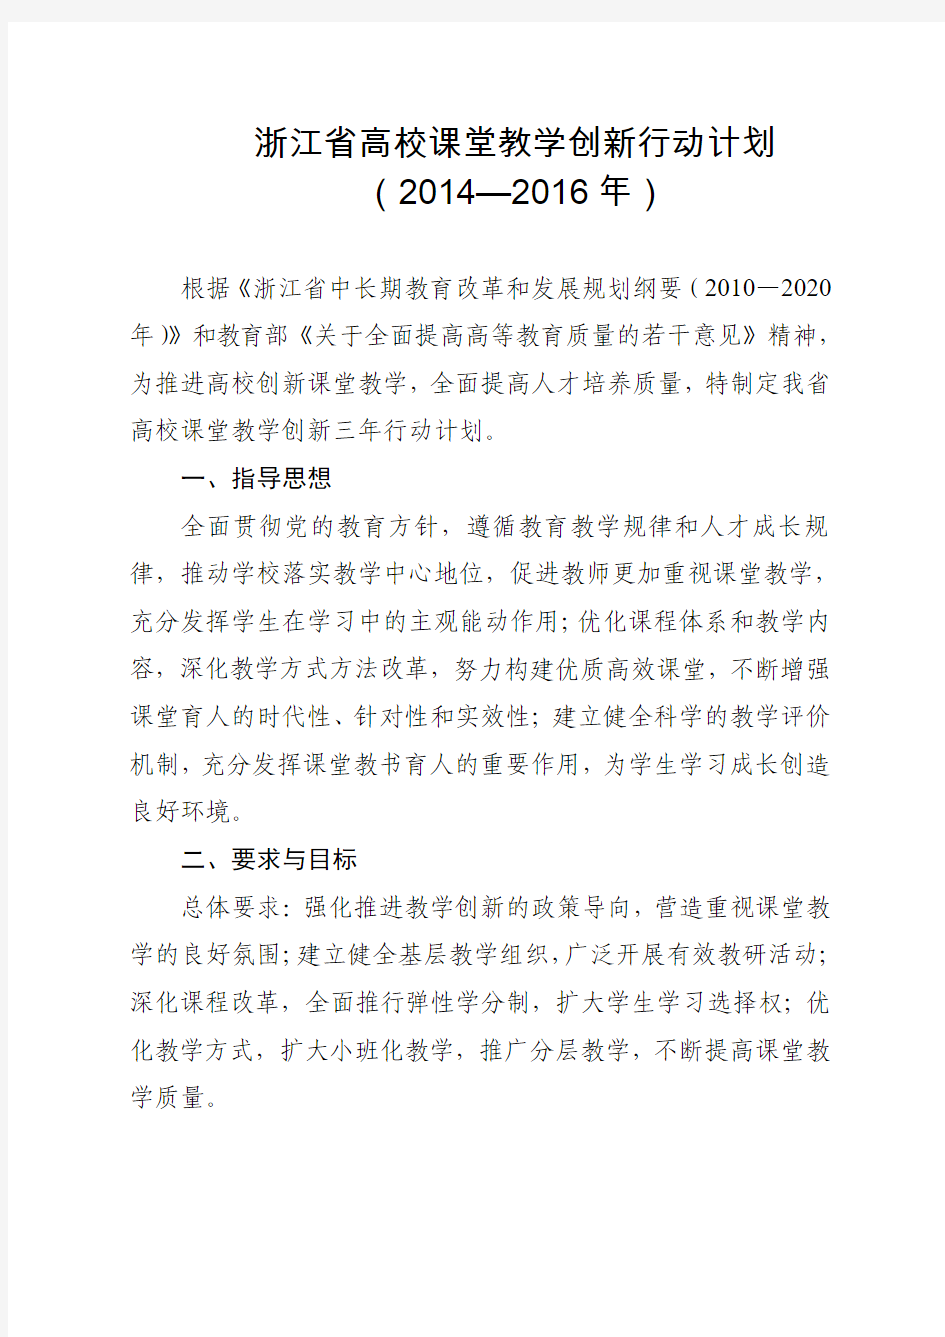 浙江省高校课堂教学创新行动计划(2014—2016年)